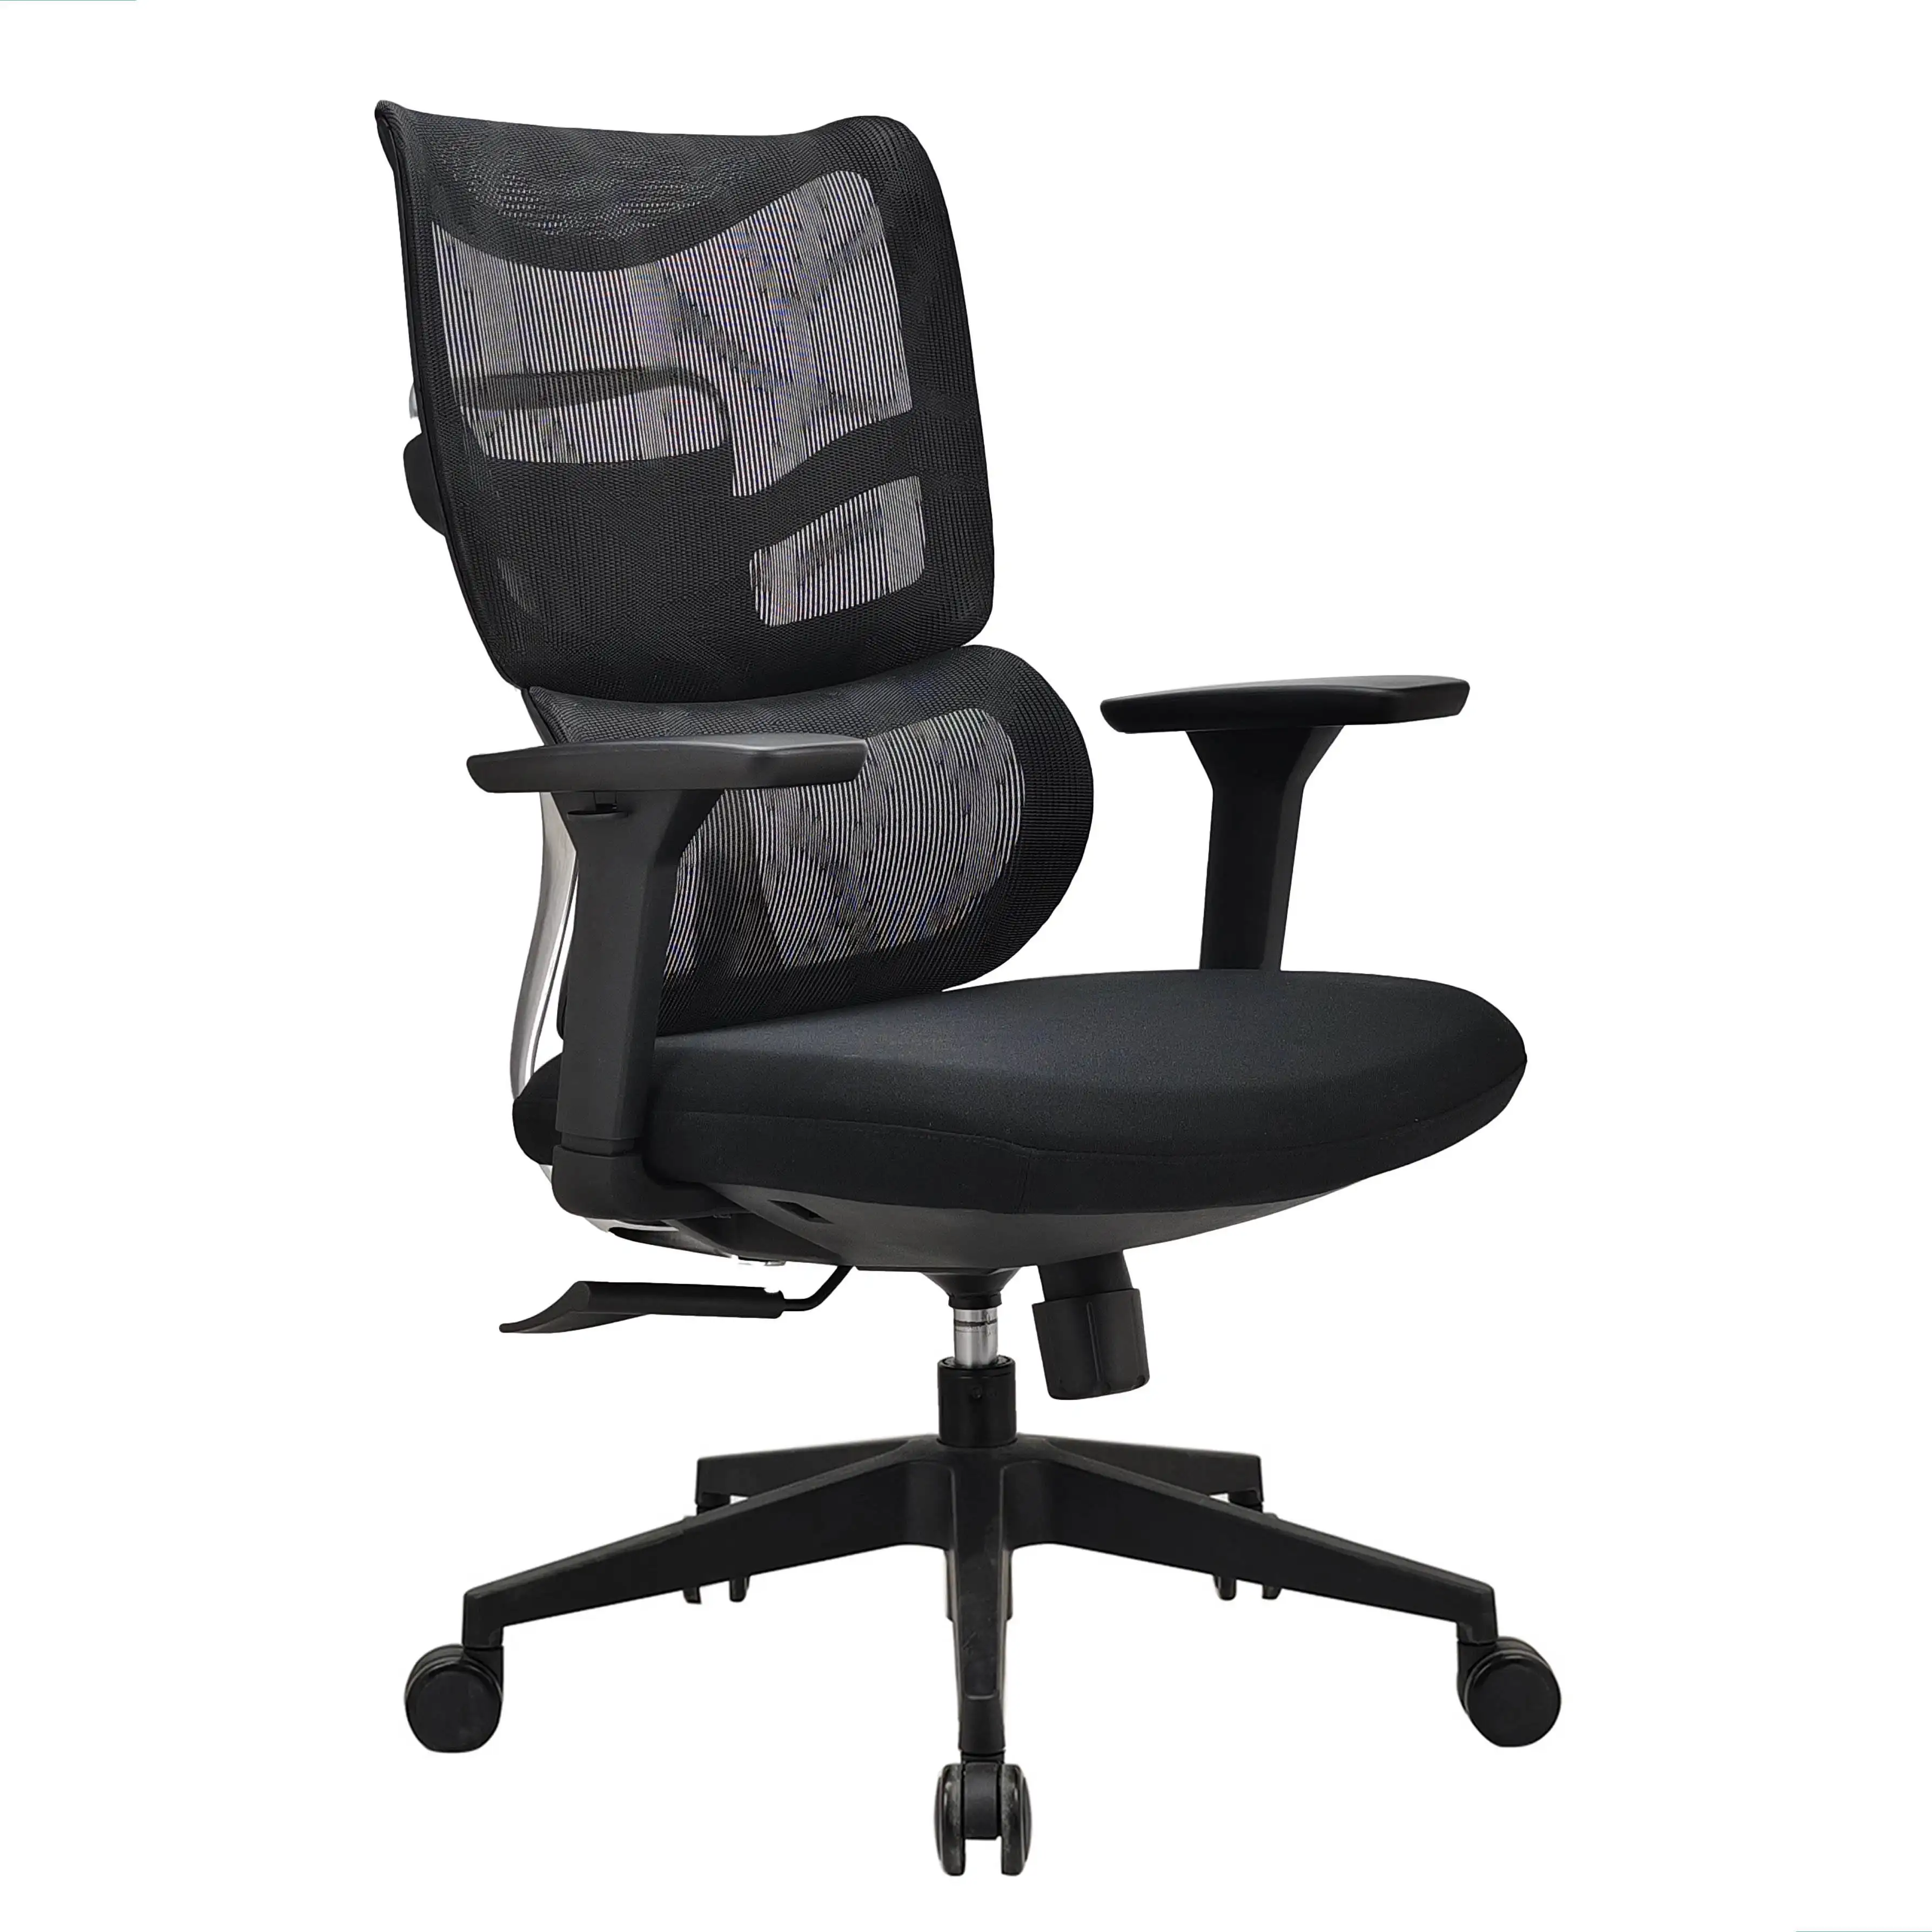 Barato personal de malla ordenador reclinable tarea oficina giratoria silla ejecutiva con reposacabezas